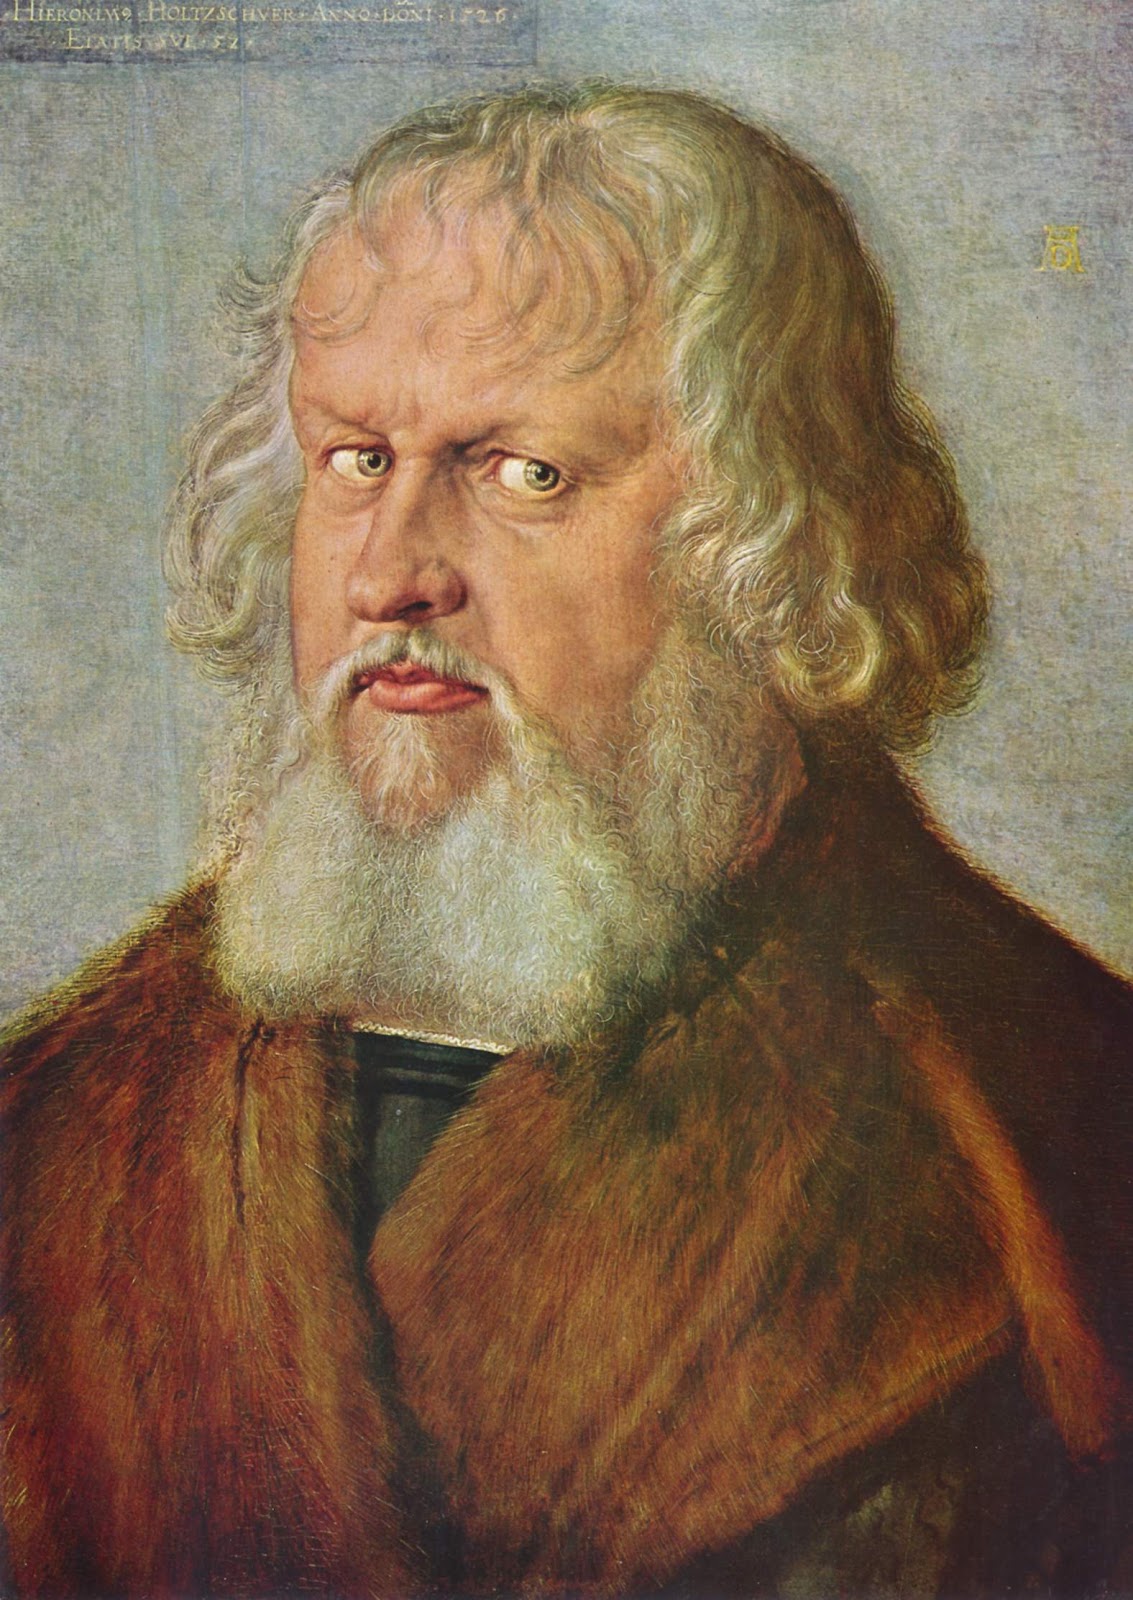 Albrecht+Durer-1471-1528 (90).jpg